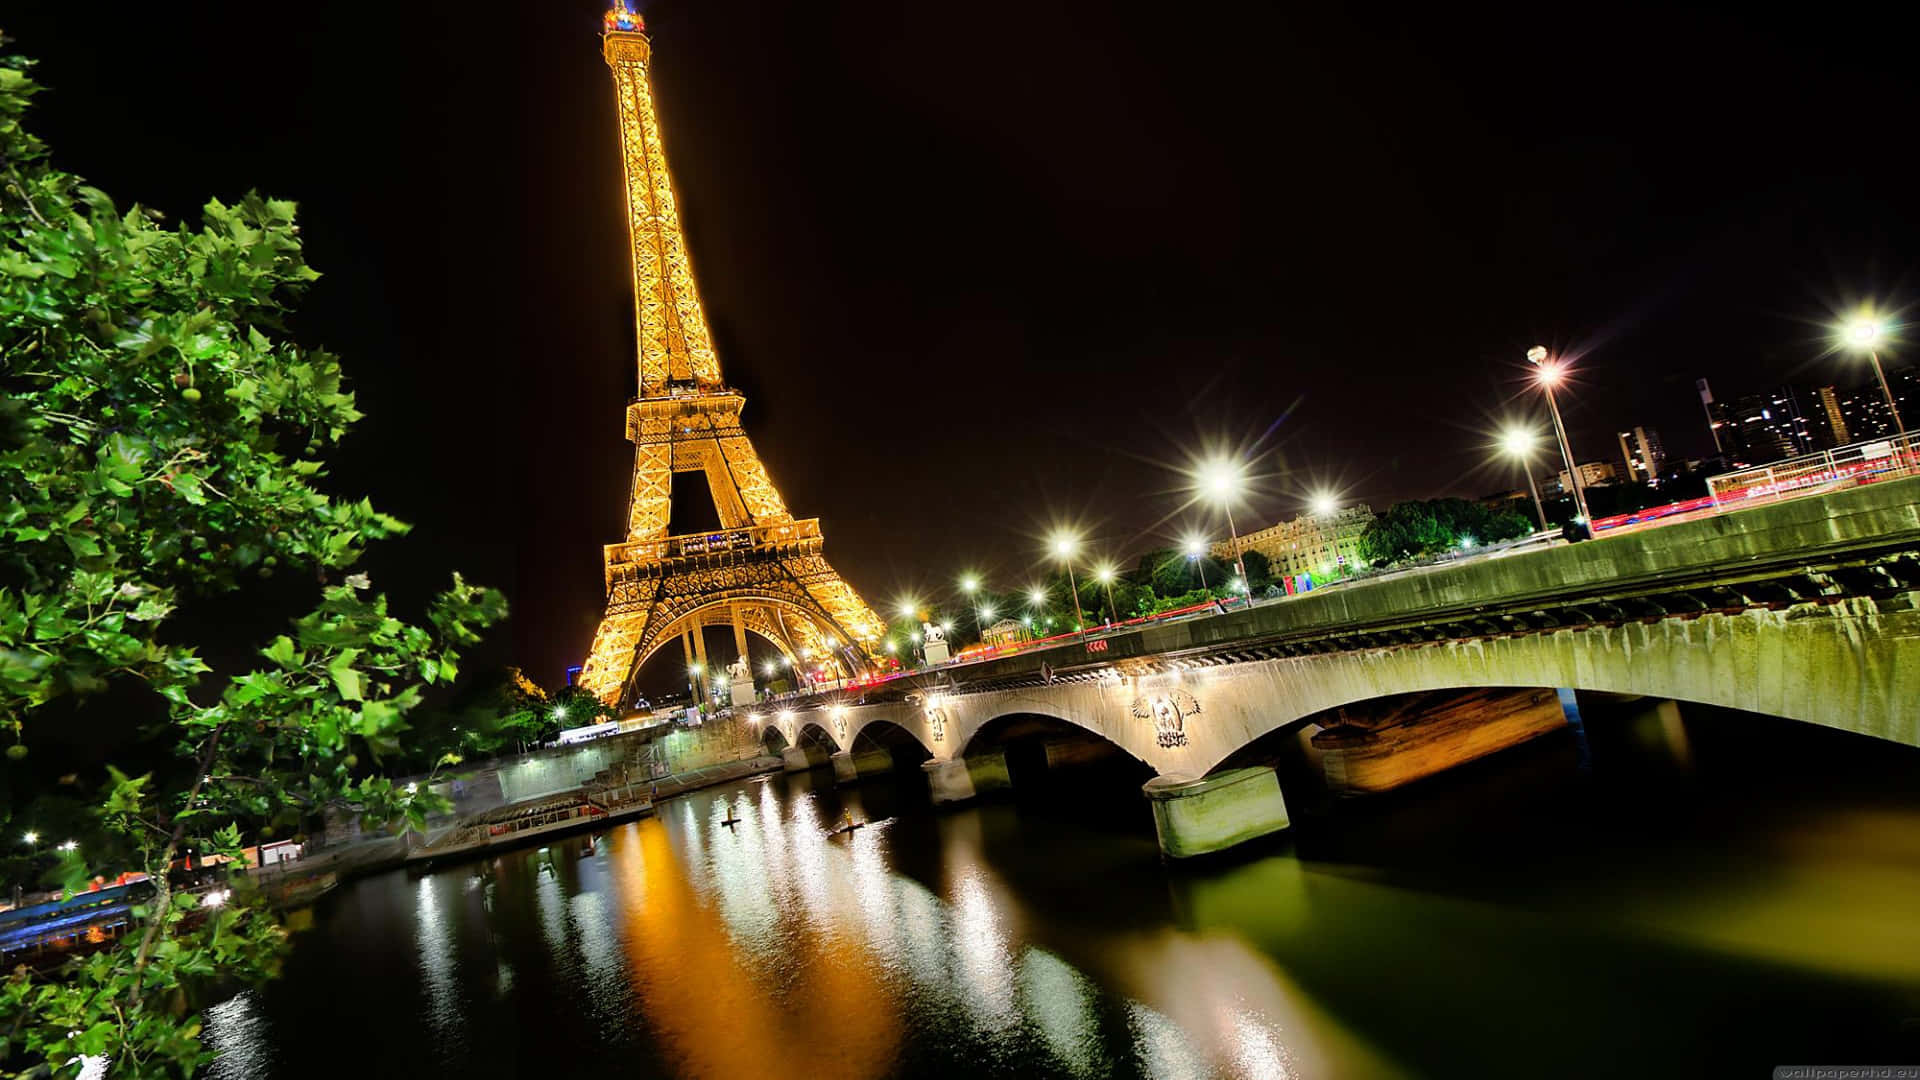 Bilddes Eiffelturms Am Fluss Bei Nacht.